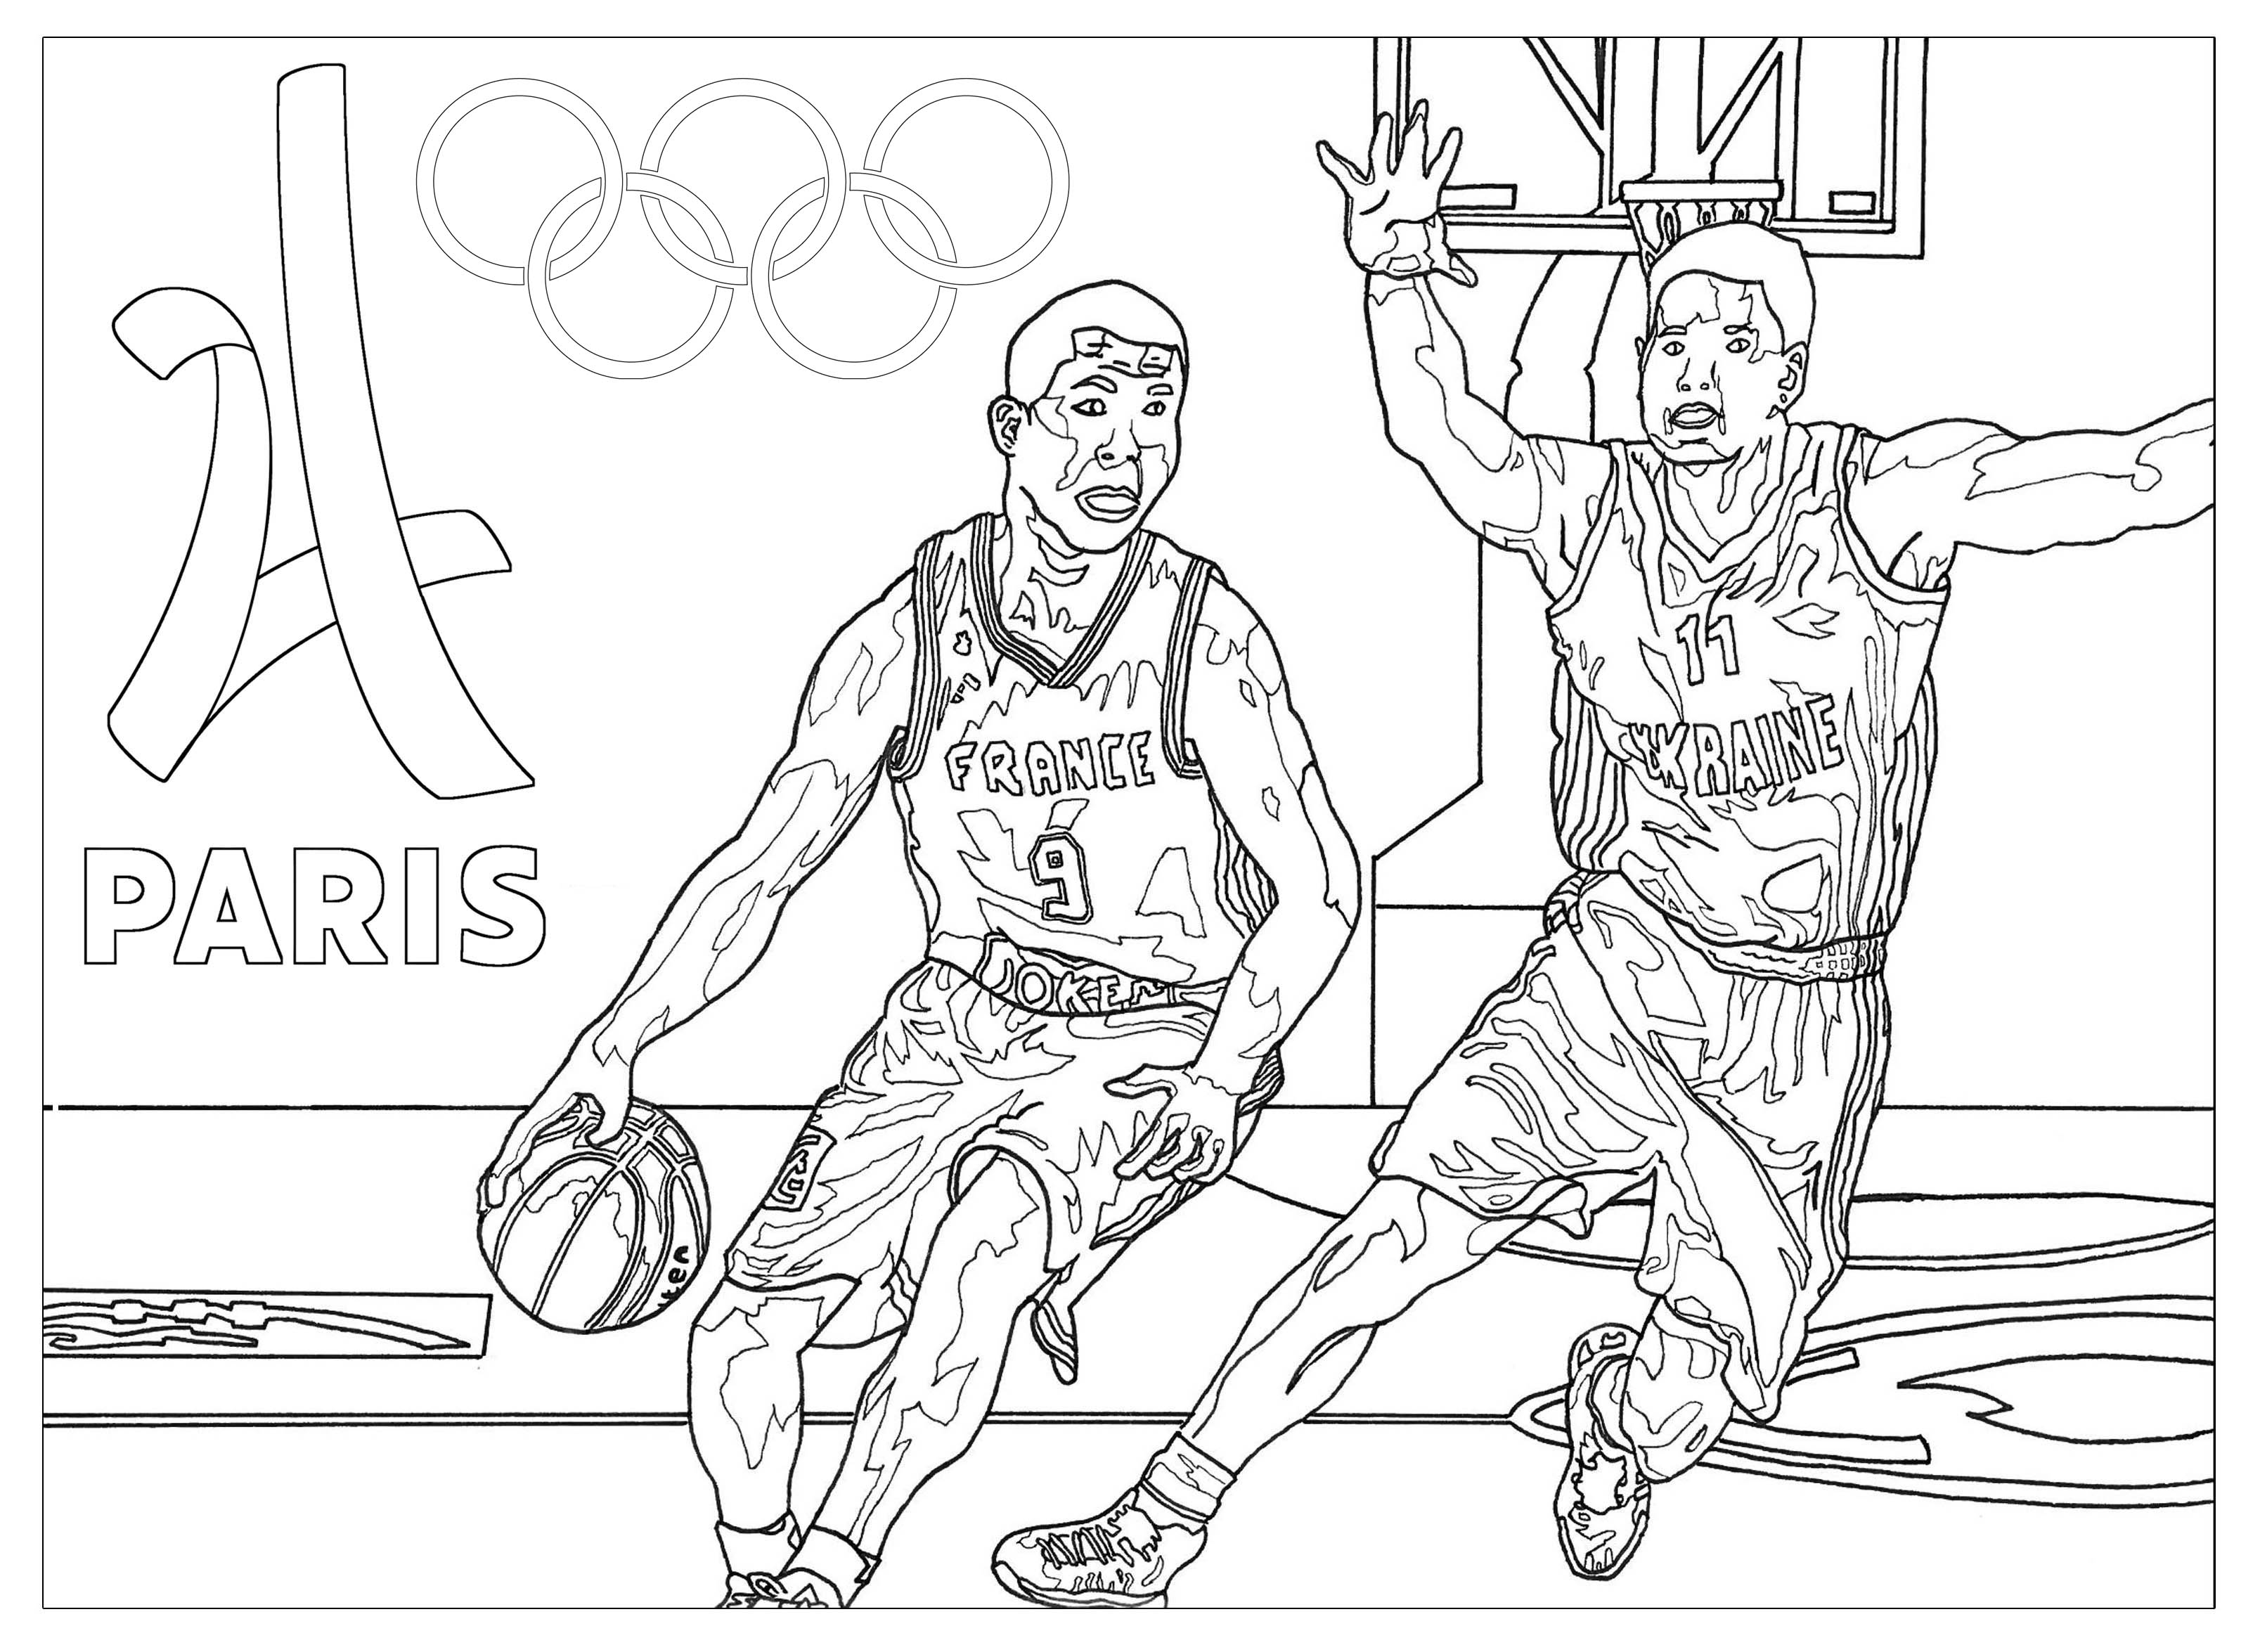 Jogos Olímpicos novos desenhos para imprimir colorir e pintar